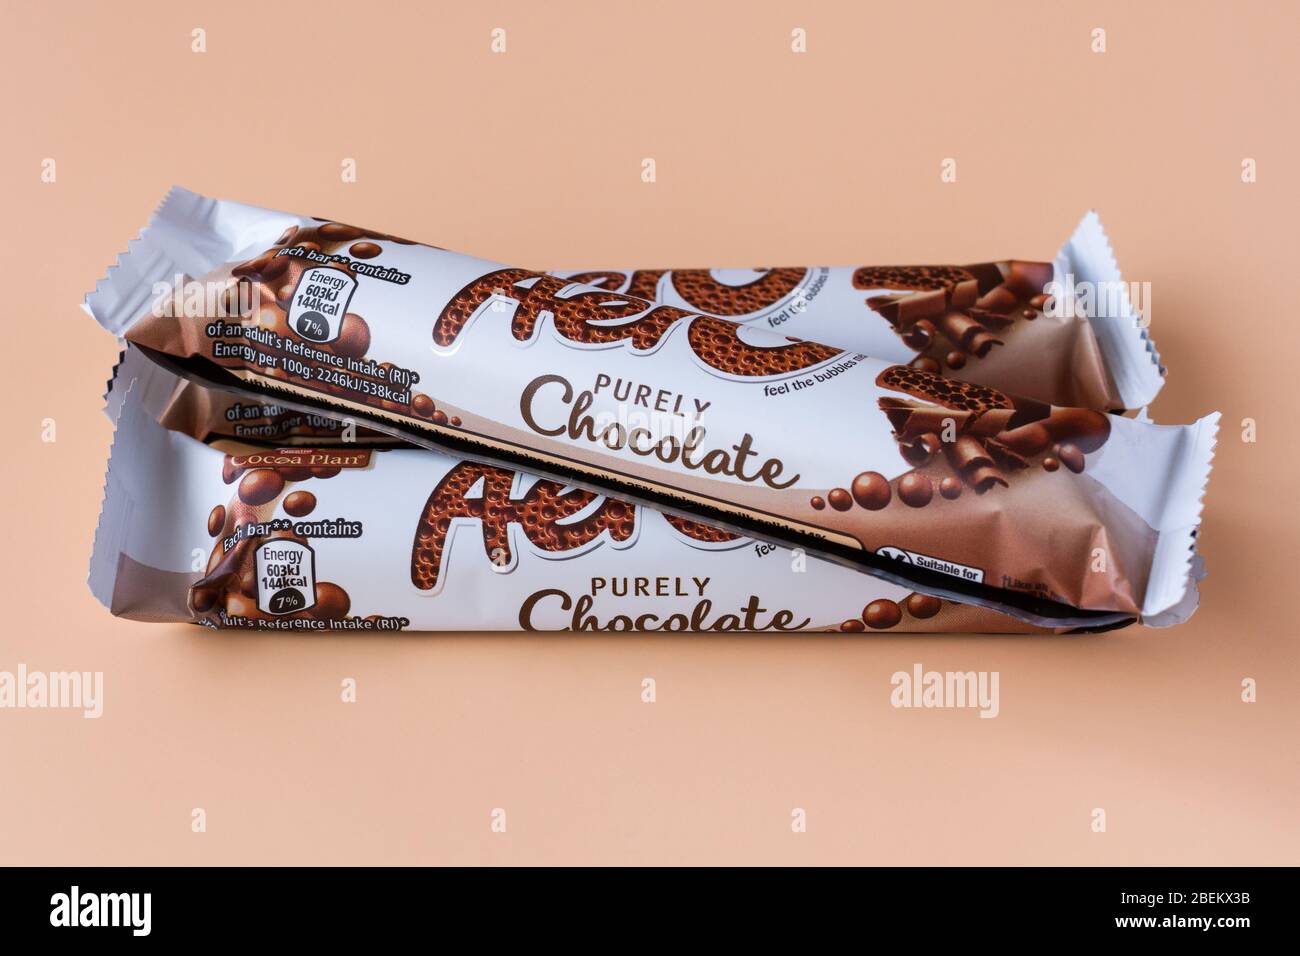 Aero chocolate bars Stock Photo